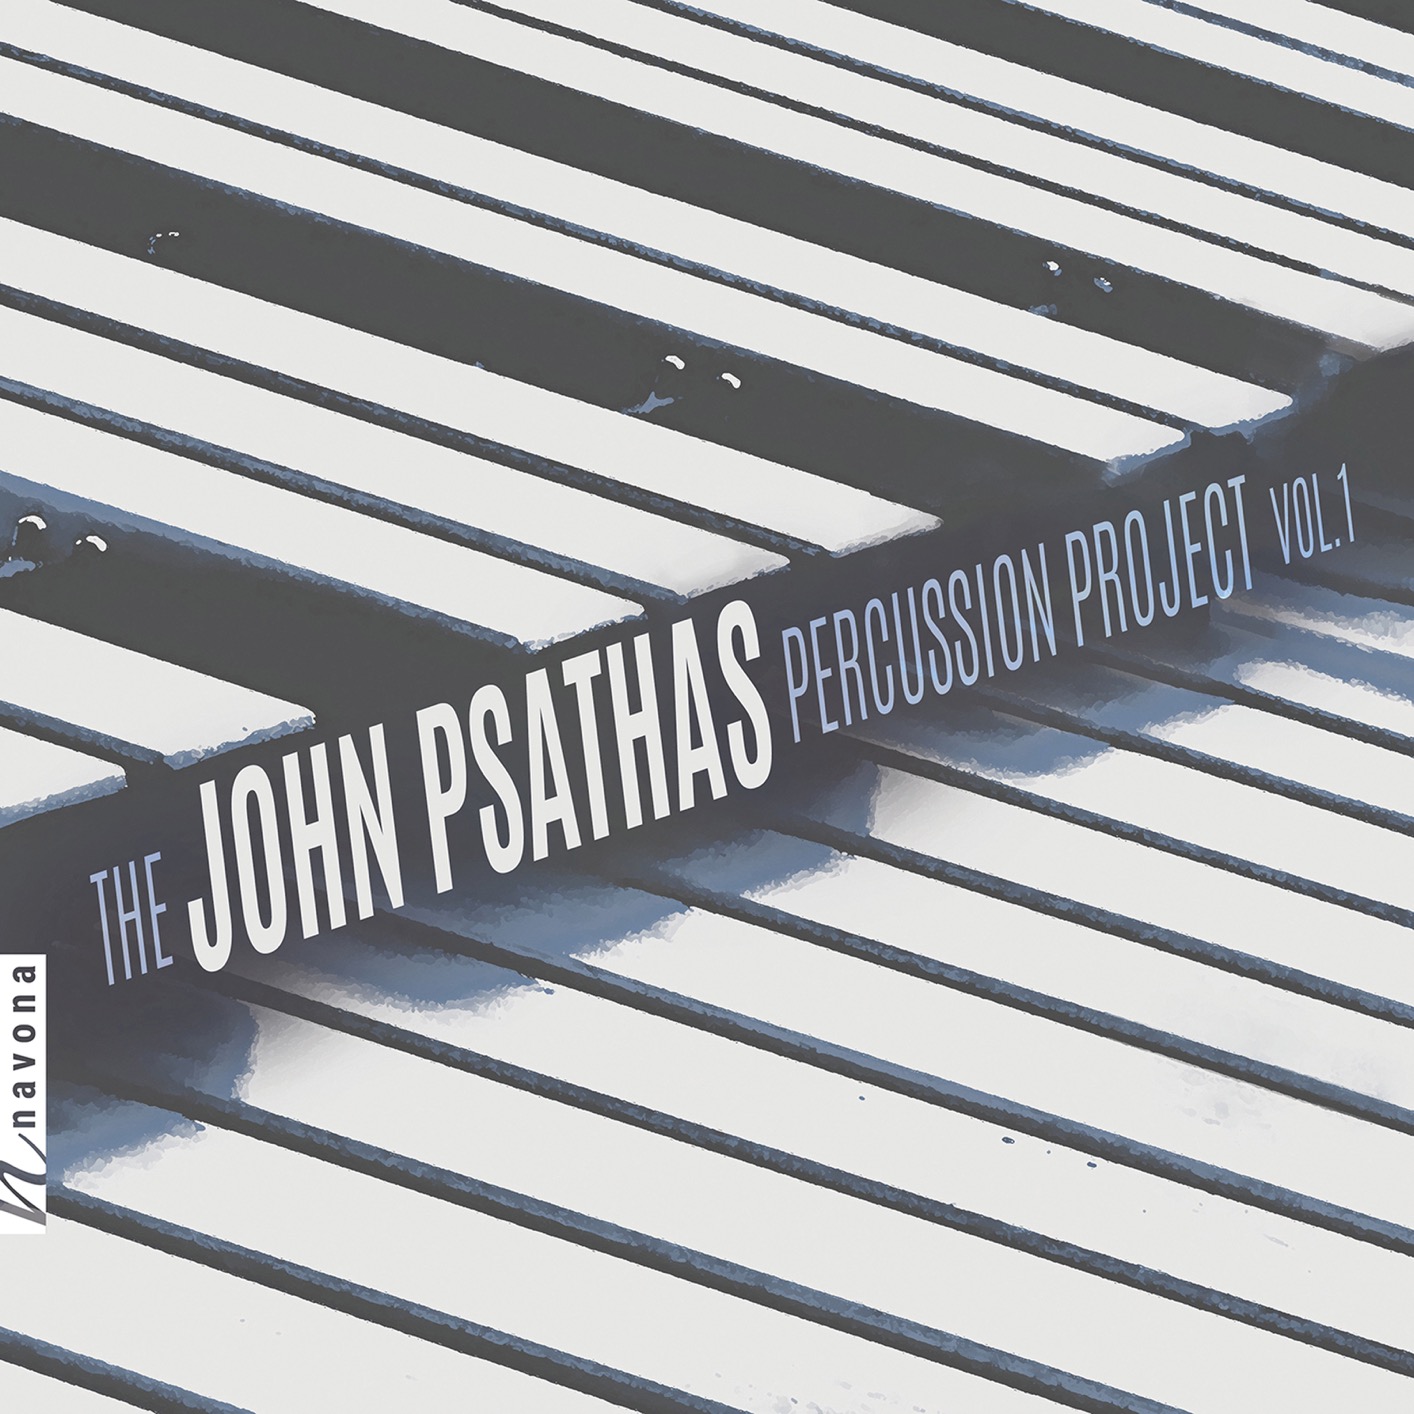 Omar Carmenates - The John Psathas Percussion Project, Vol. 1 (2019) [FLAC 24bit/44,1kHz]